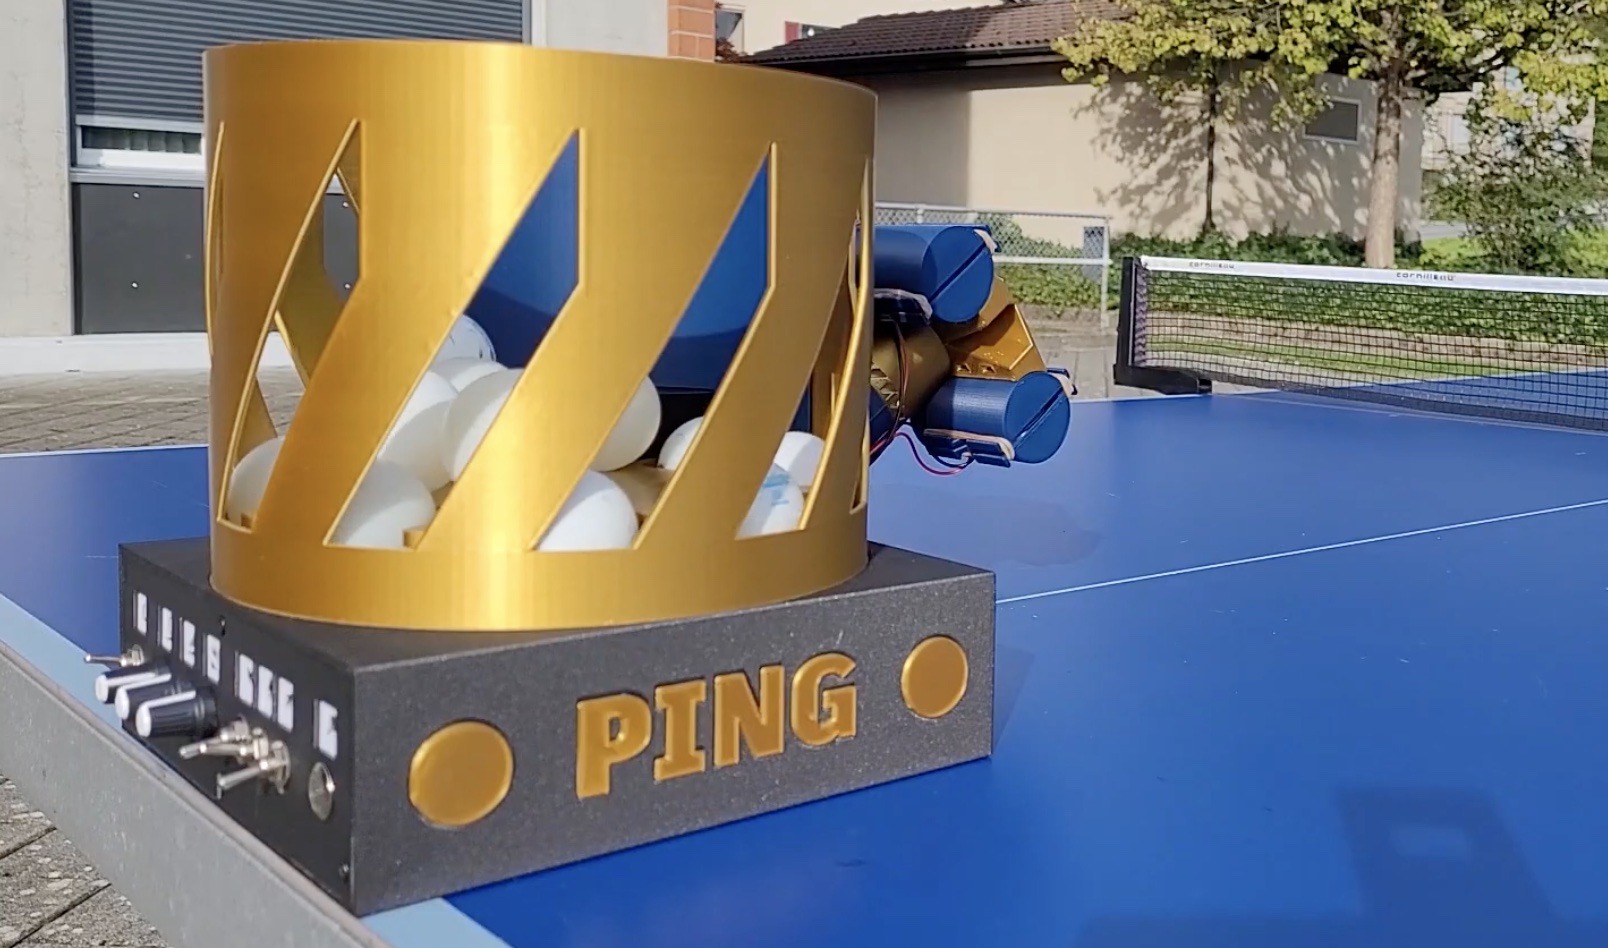 El robot de ping pong te permite componer los servicios